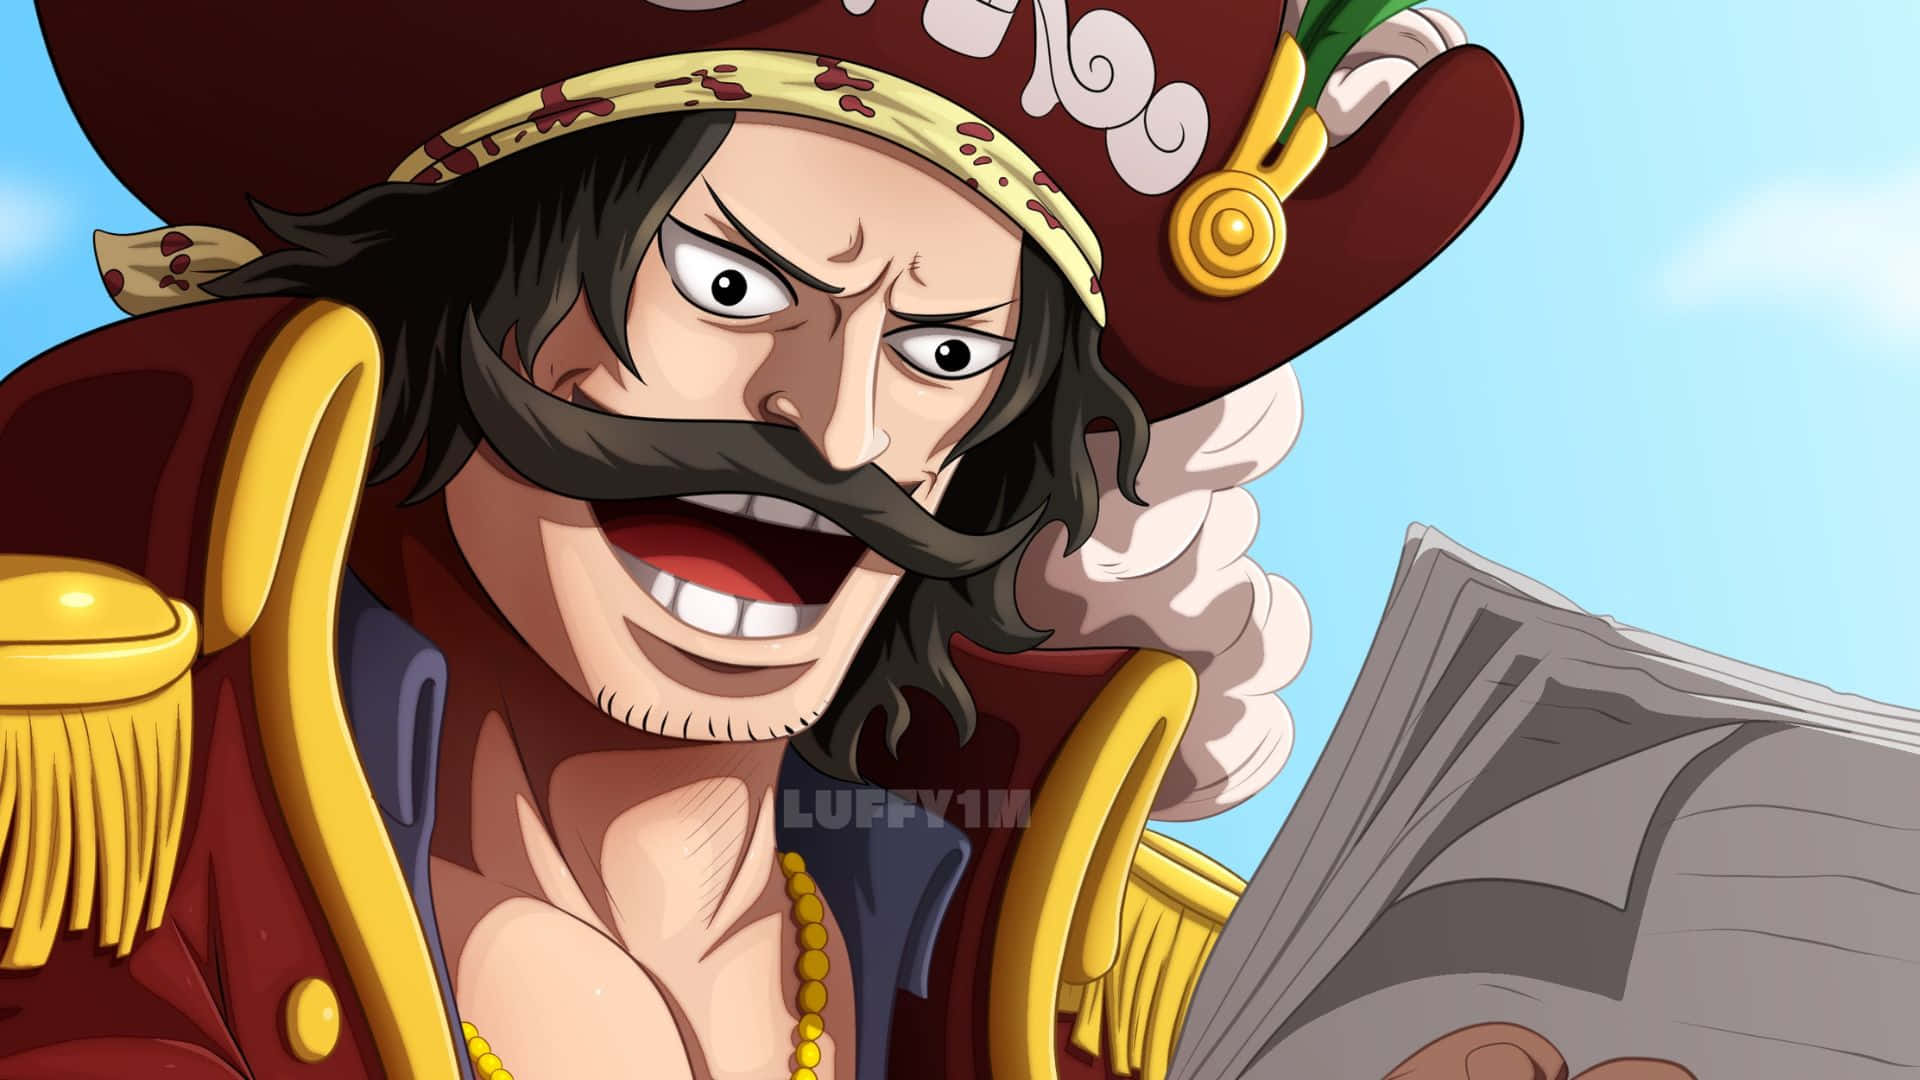 The Legendary Pirate King Gol D. Roger" Wallpaper